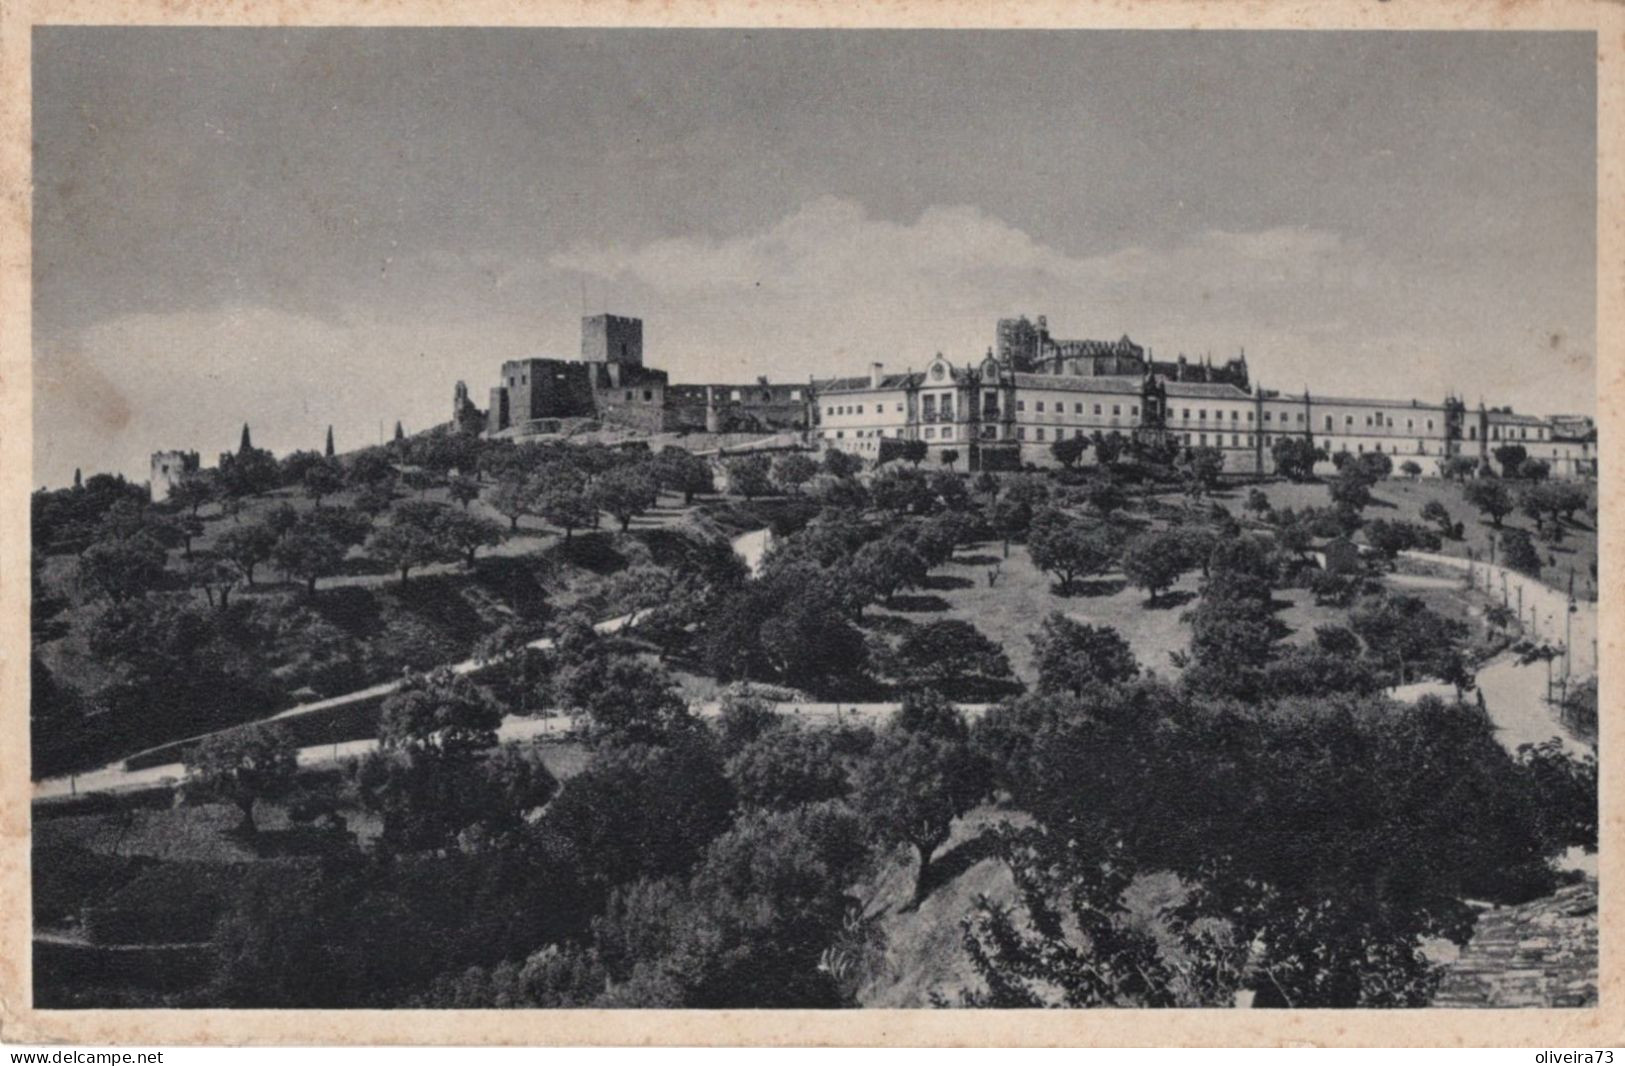 TOMAR - Vista Geral Do Convento De Cristo - PORTUGAL - Santarem